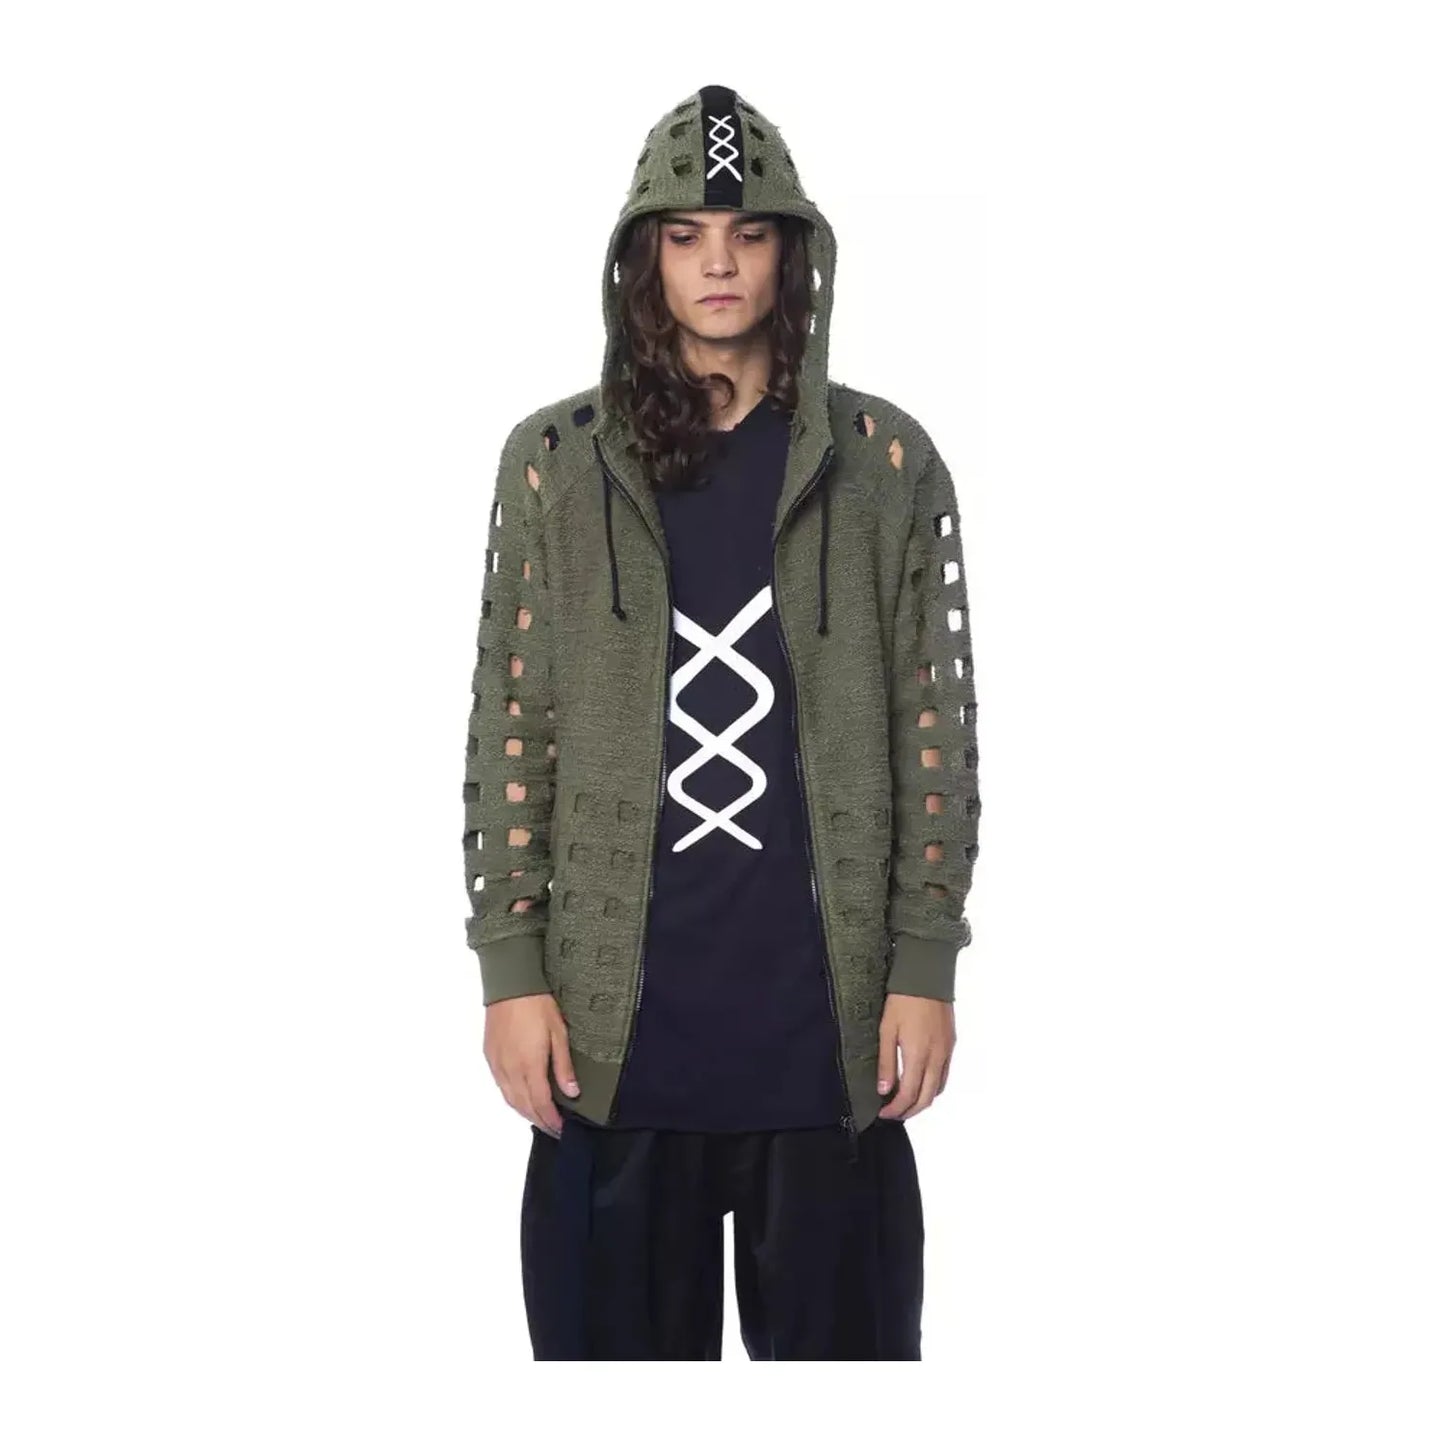 Nicolo Tonetto Oversized Hooded Fleece - Army Zip Comfort army-sweater-1